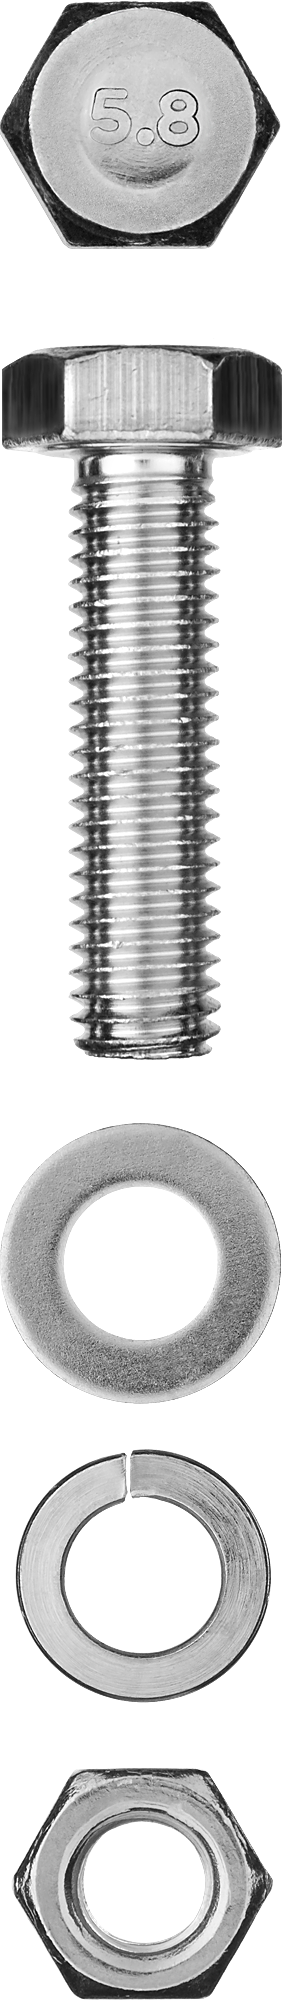 Болт (DIN933) с шестигранной головкой в комплекте с гайкой (DIN934), шайбой (DIN125), шайбой пруж. (DIN127) Зубр 303436-10-030, М10, 3 см, 933 DIN, 1 см, оцинкованная сталь, 3 шт., фасовка (303436-10-030)